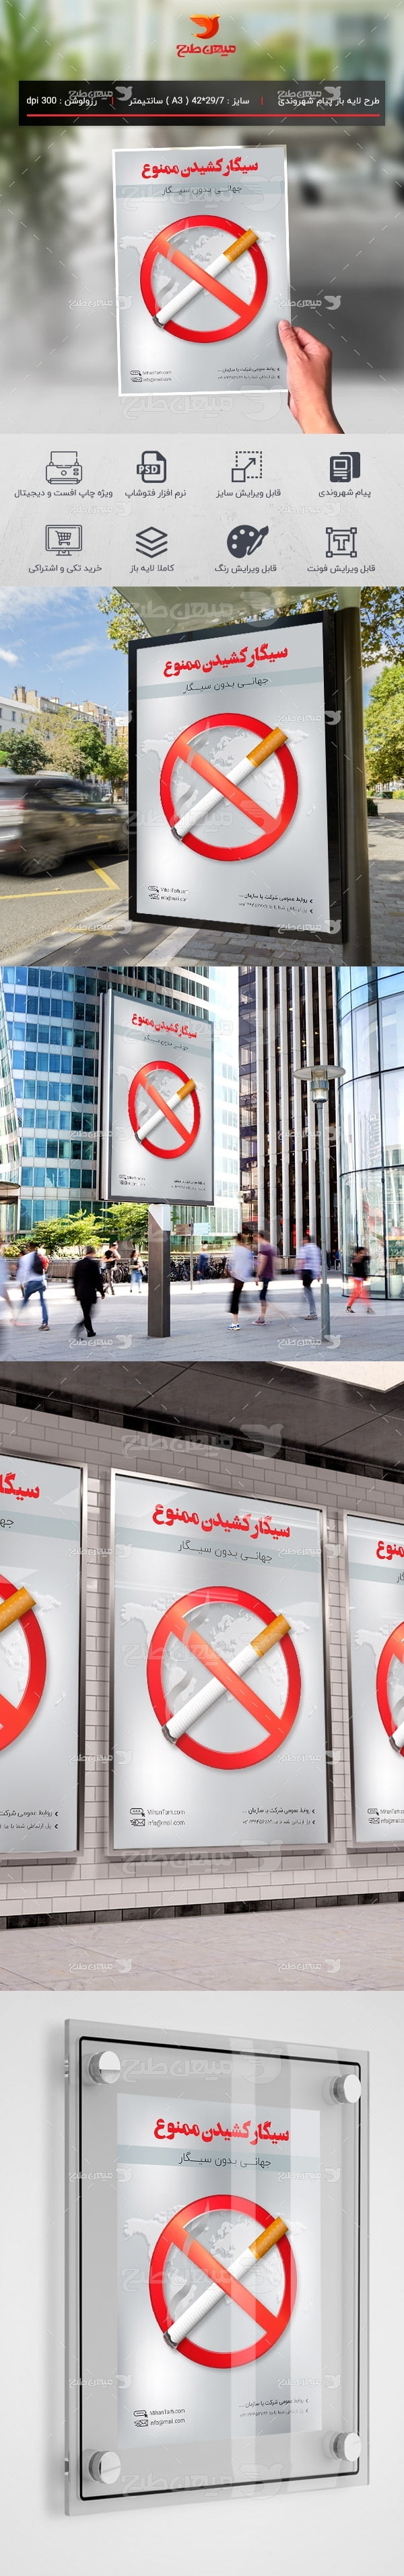 طرح لایه باز پیام شهروندی سیگار ممنوع